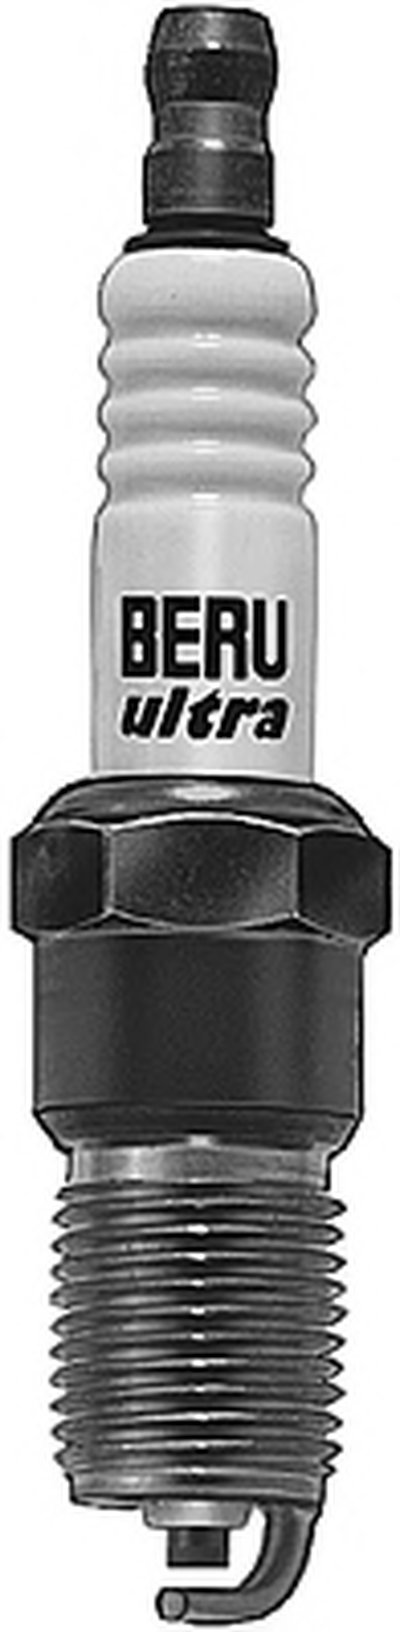 Свеча зажигания ULTRA BERU купить